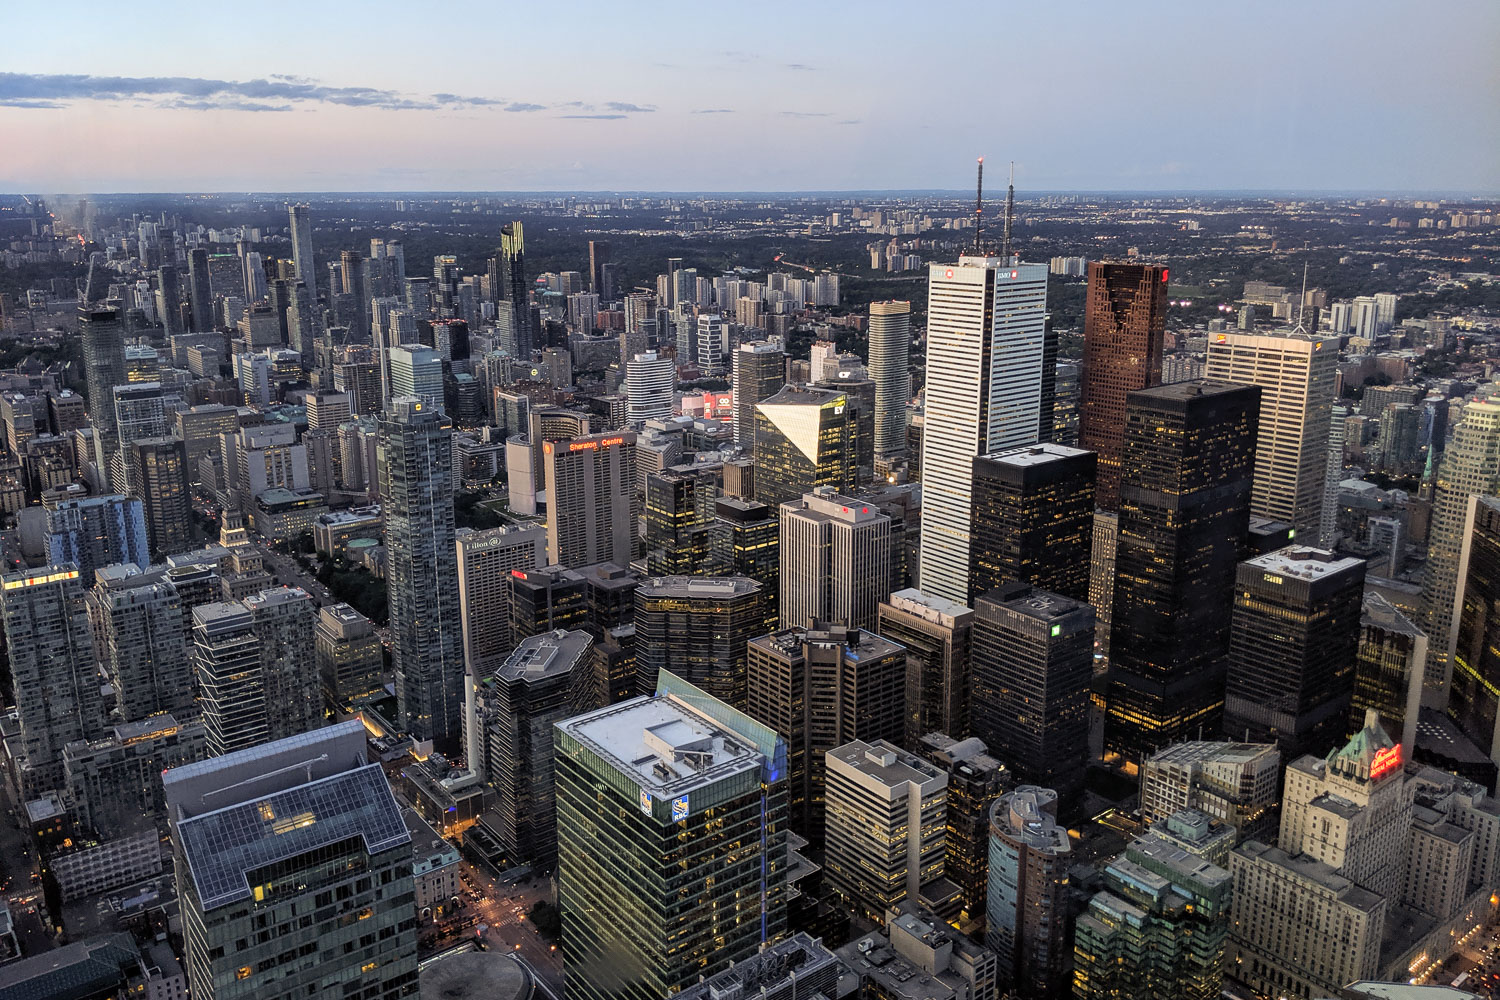 Blick über Toronto aus dem CN Tower. Wir haben die Aussichtsplattform gegen Einbruch der Dämmerung erreicht, sodass wir einen schönen Sonnenuntergang aus 447 Meter Höhe genießen konnten. Bildnachweis: Nico Geisler/TU Braunschweig